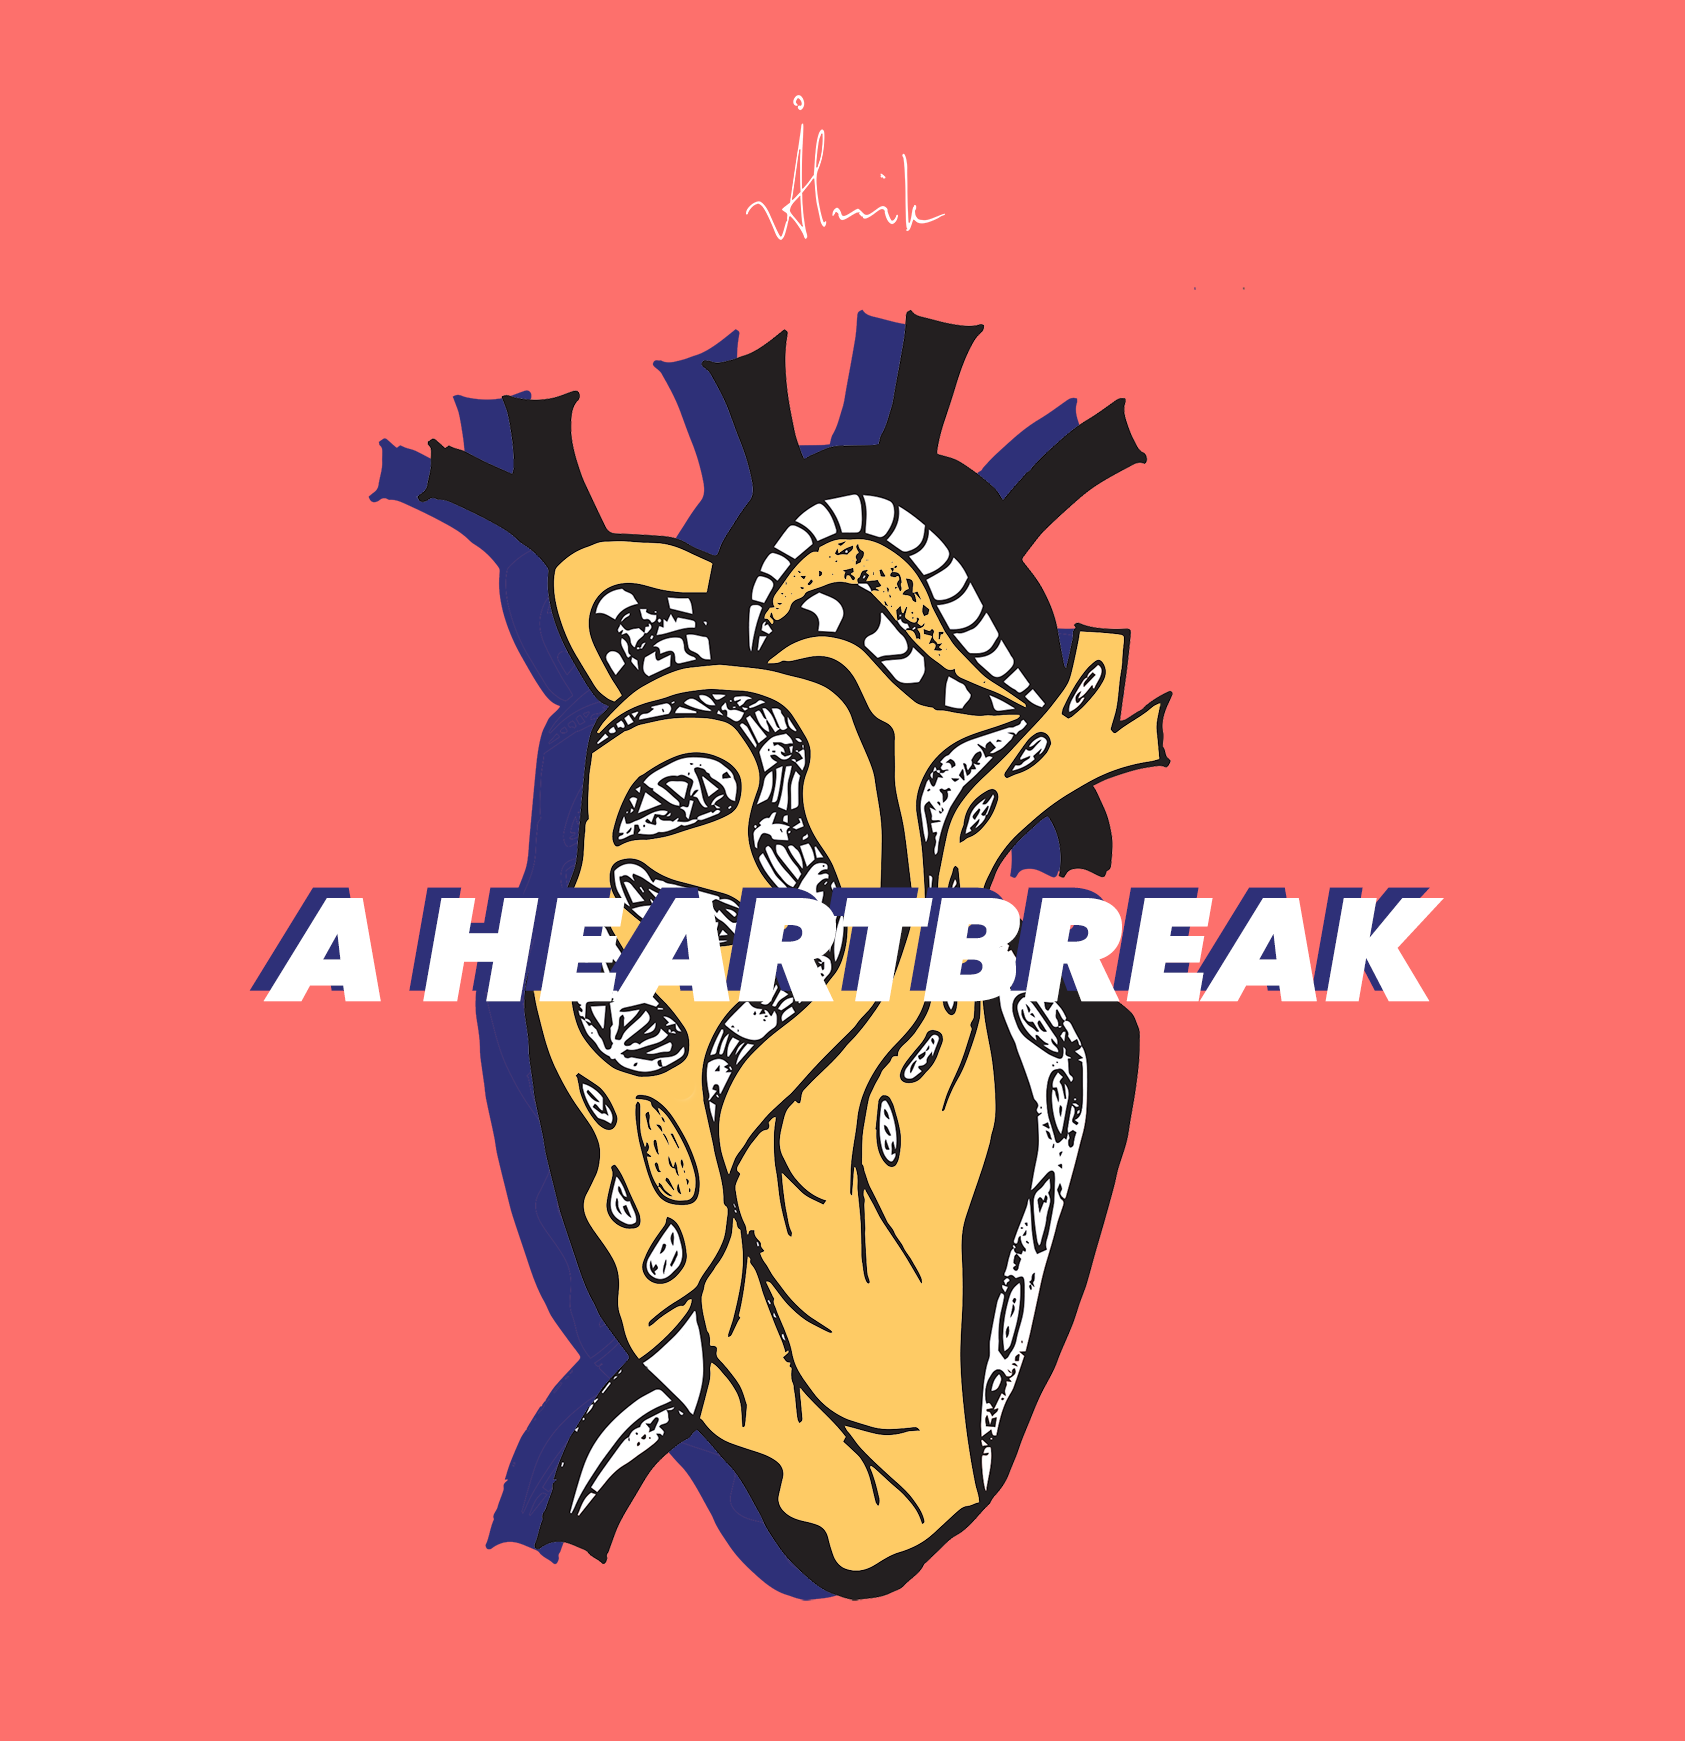 [A Heartbreak]